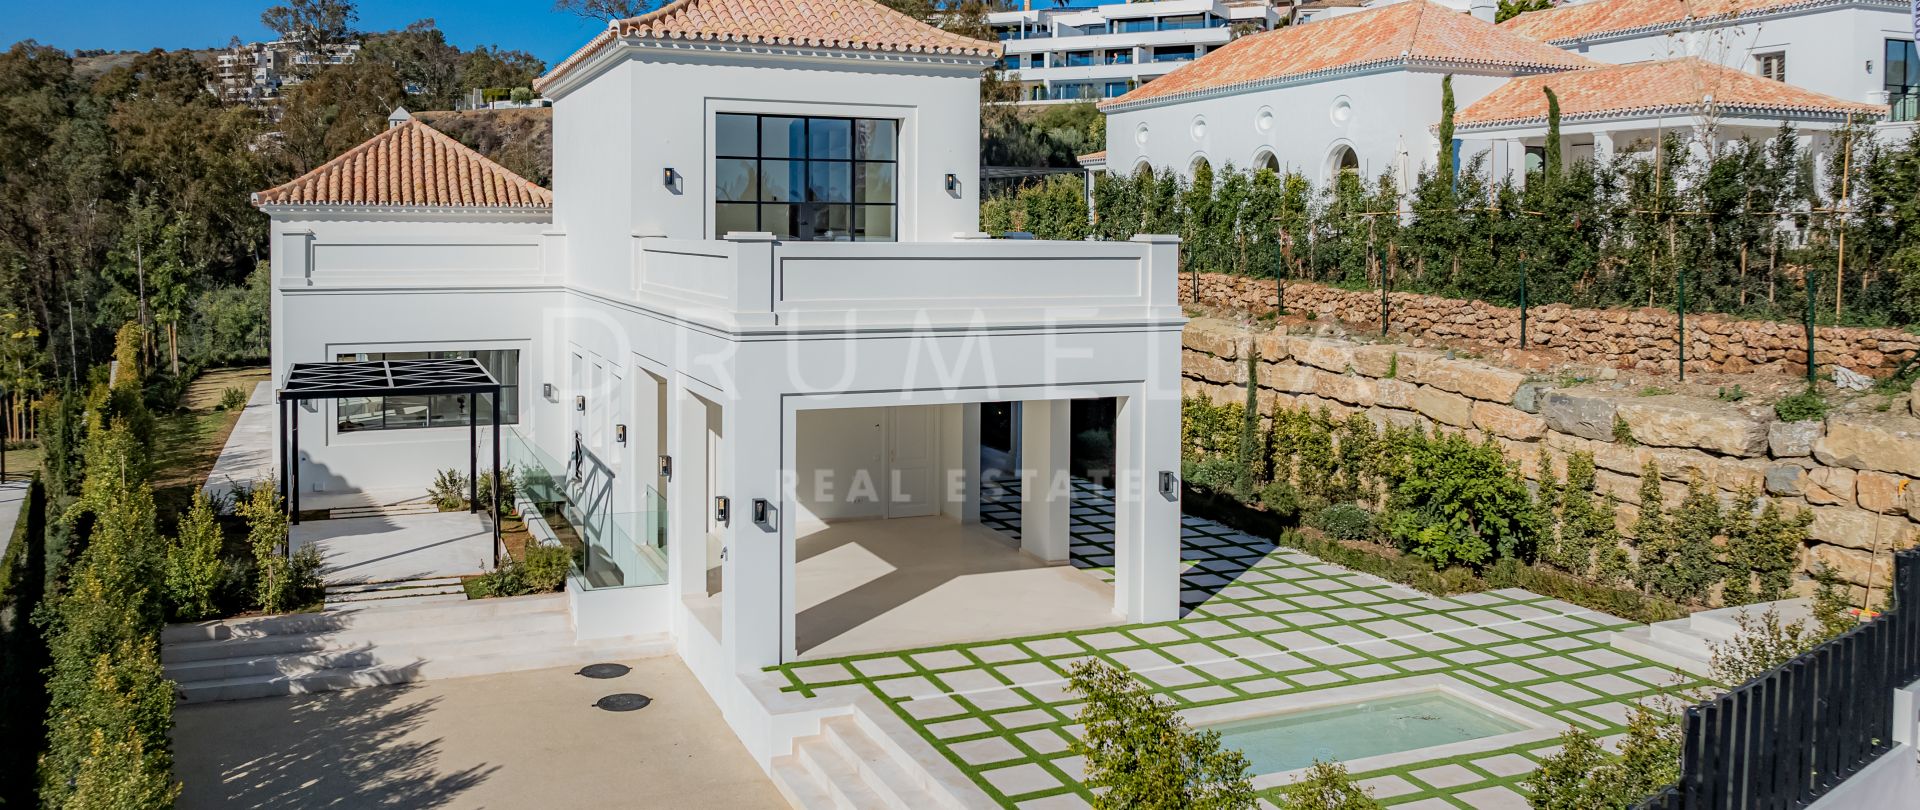 Elegant villa med basseng i fransk provinsiell stil i La Cerquilla i Marbella